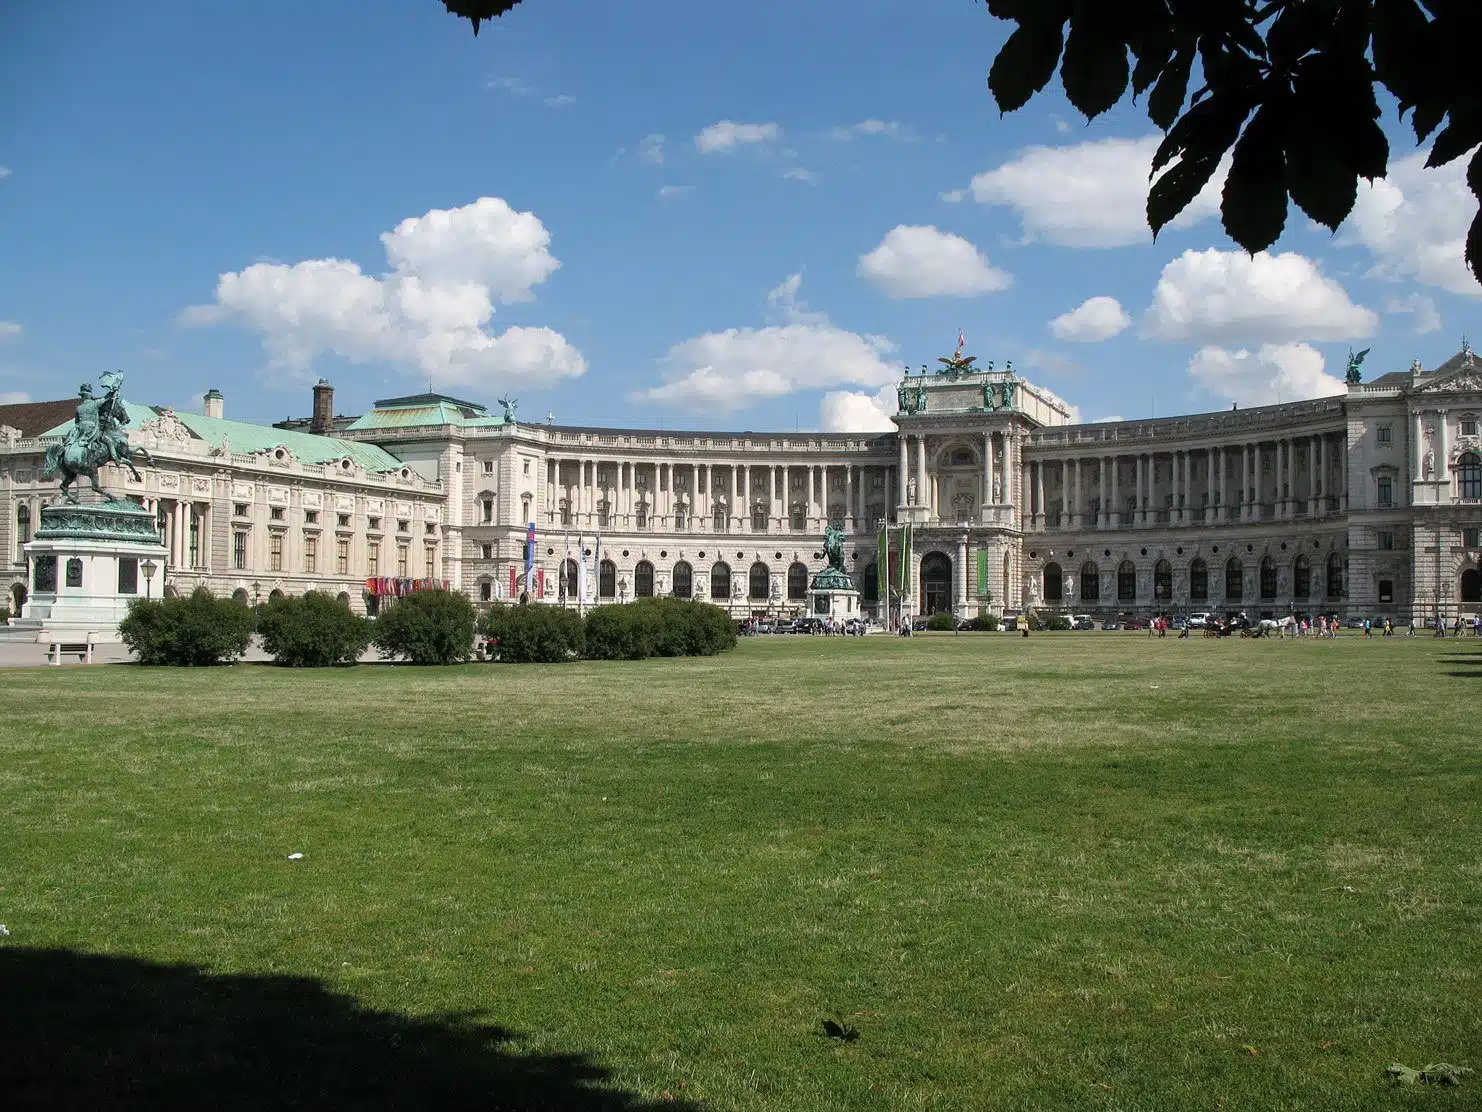 Der Heldenplatz ist ein historischer Platz in Wien, der zur Hofburg gehört